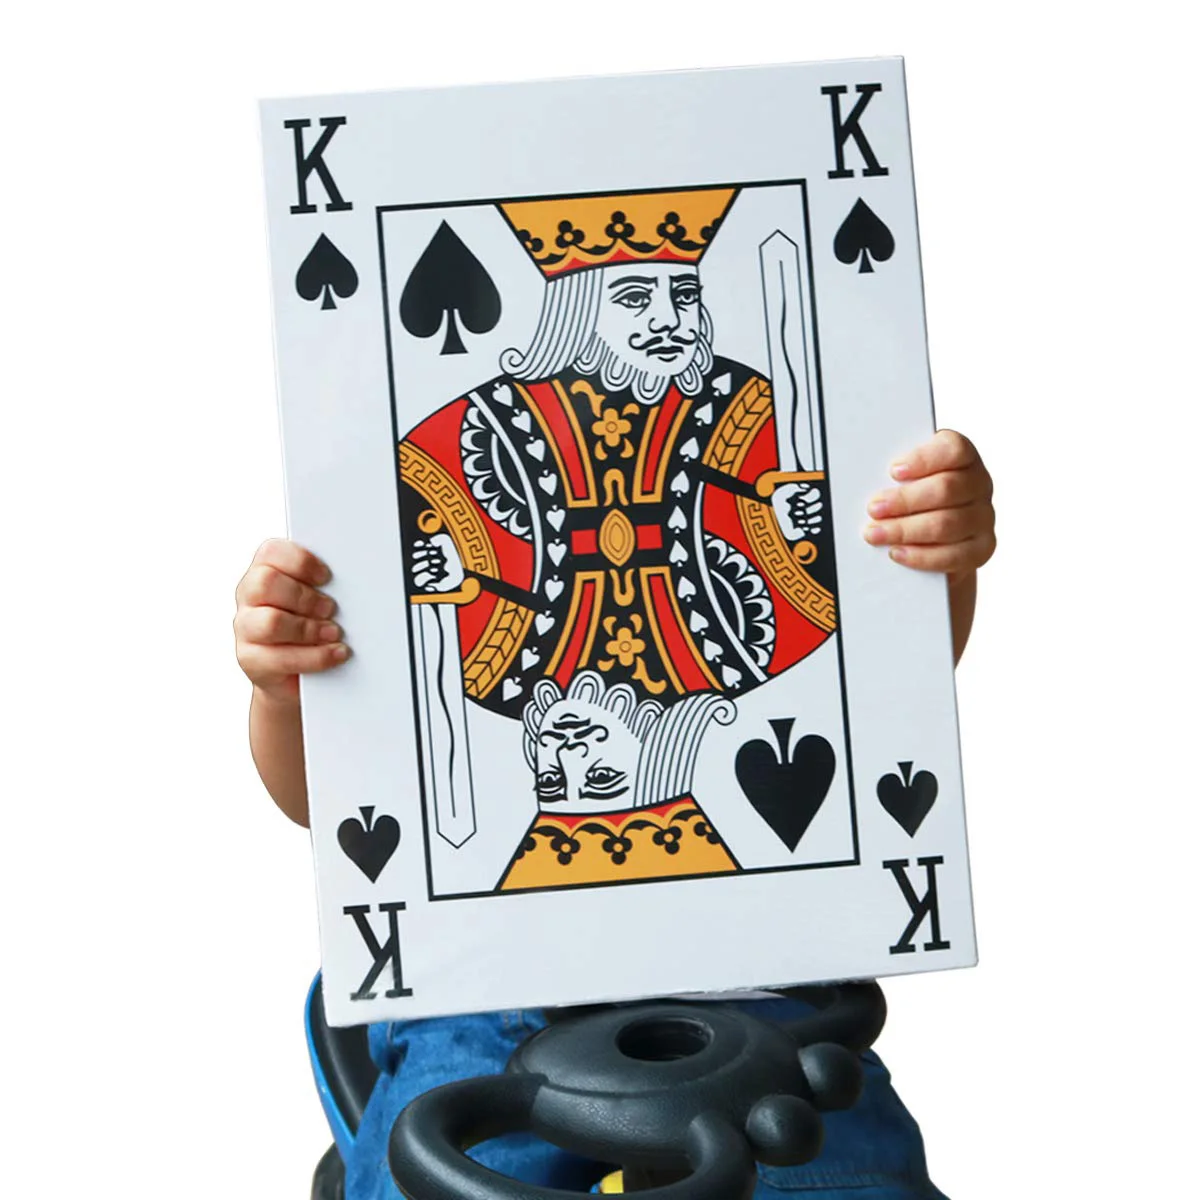 3 Størrelsen 2/4/9 Gange Super Stor Kæmpe Jumbo Spillekort Fuld Dæk Enorme Standard Udskriv Nyhed Poker Index Spillekort Sjovt Spil